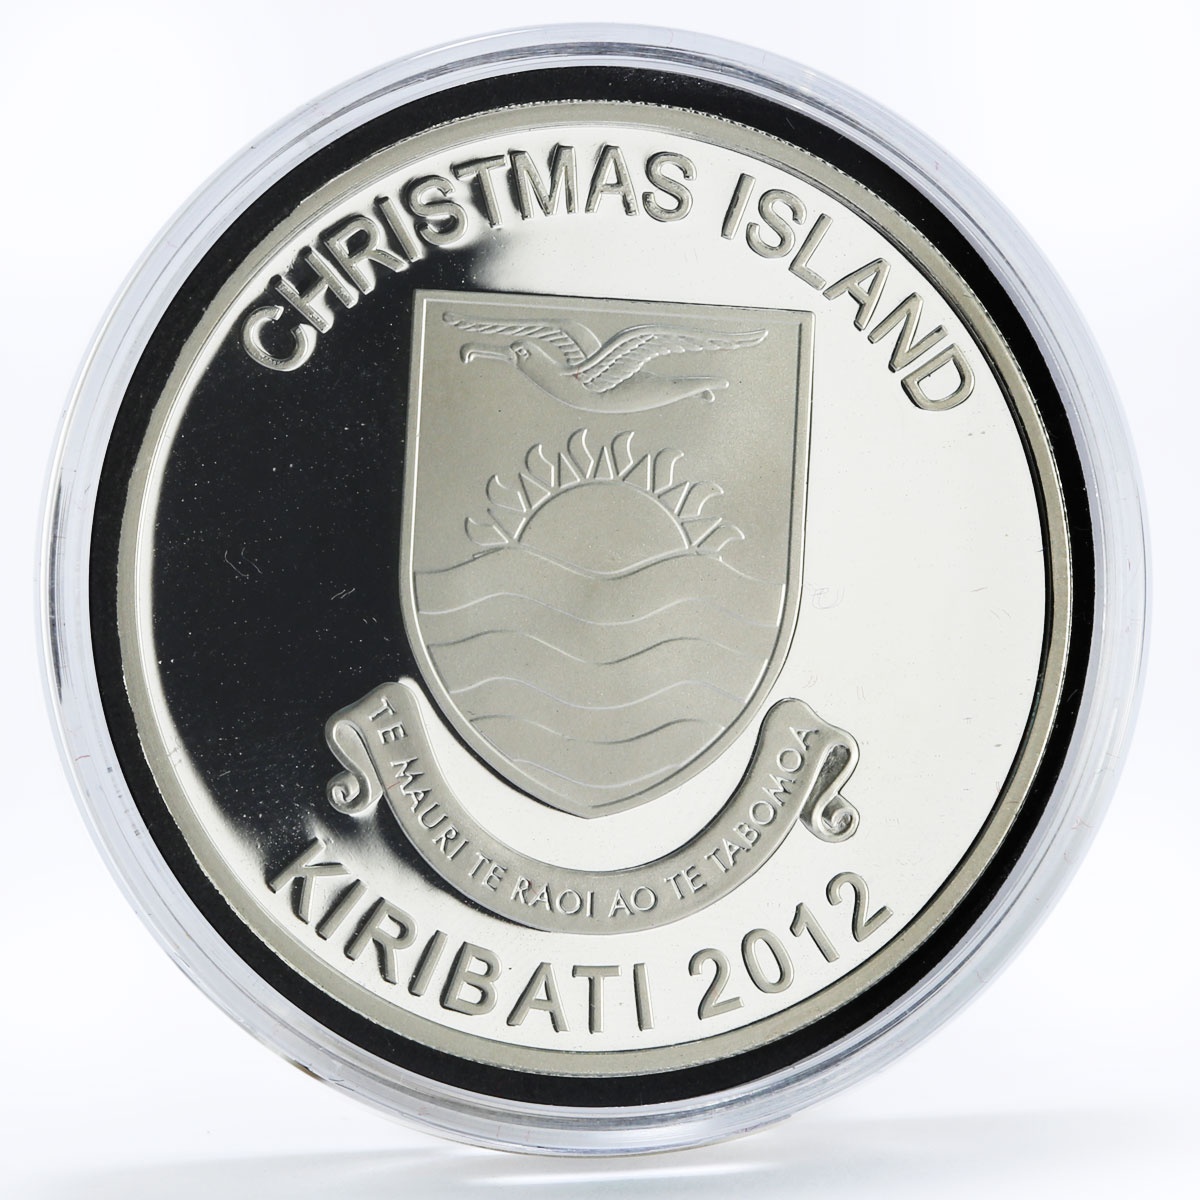 Kiribati 5 dollars Animals series Rednosed Deer gilded silver coin 2012